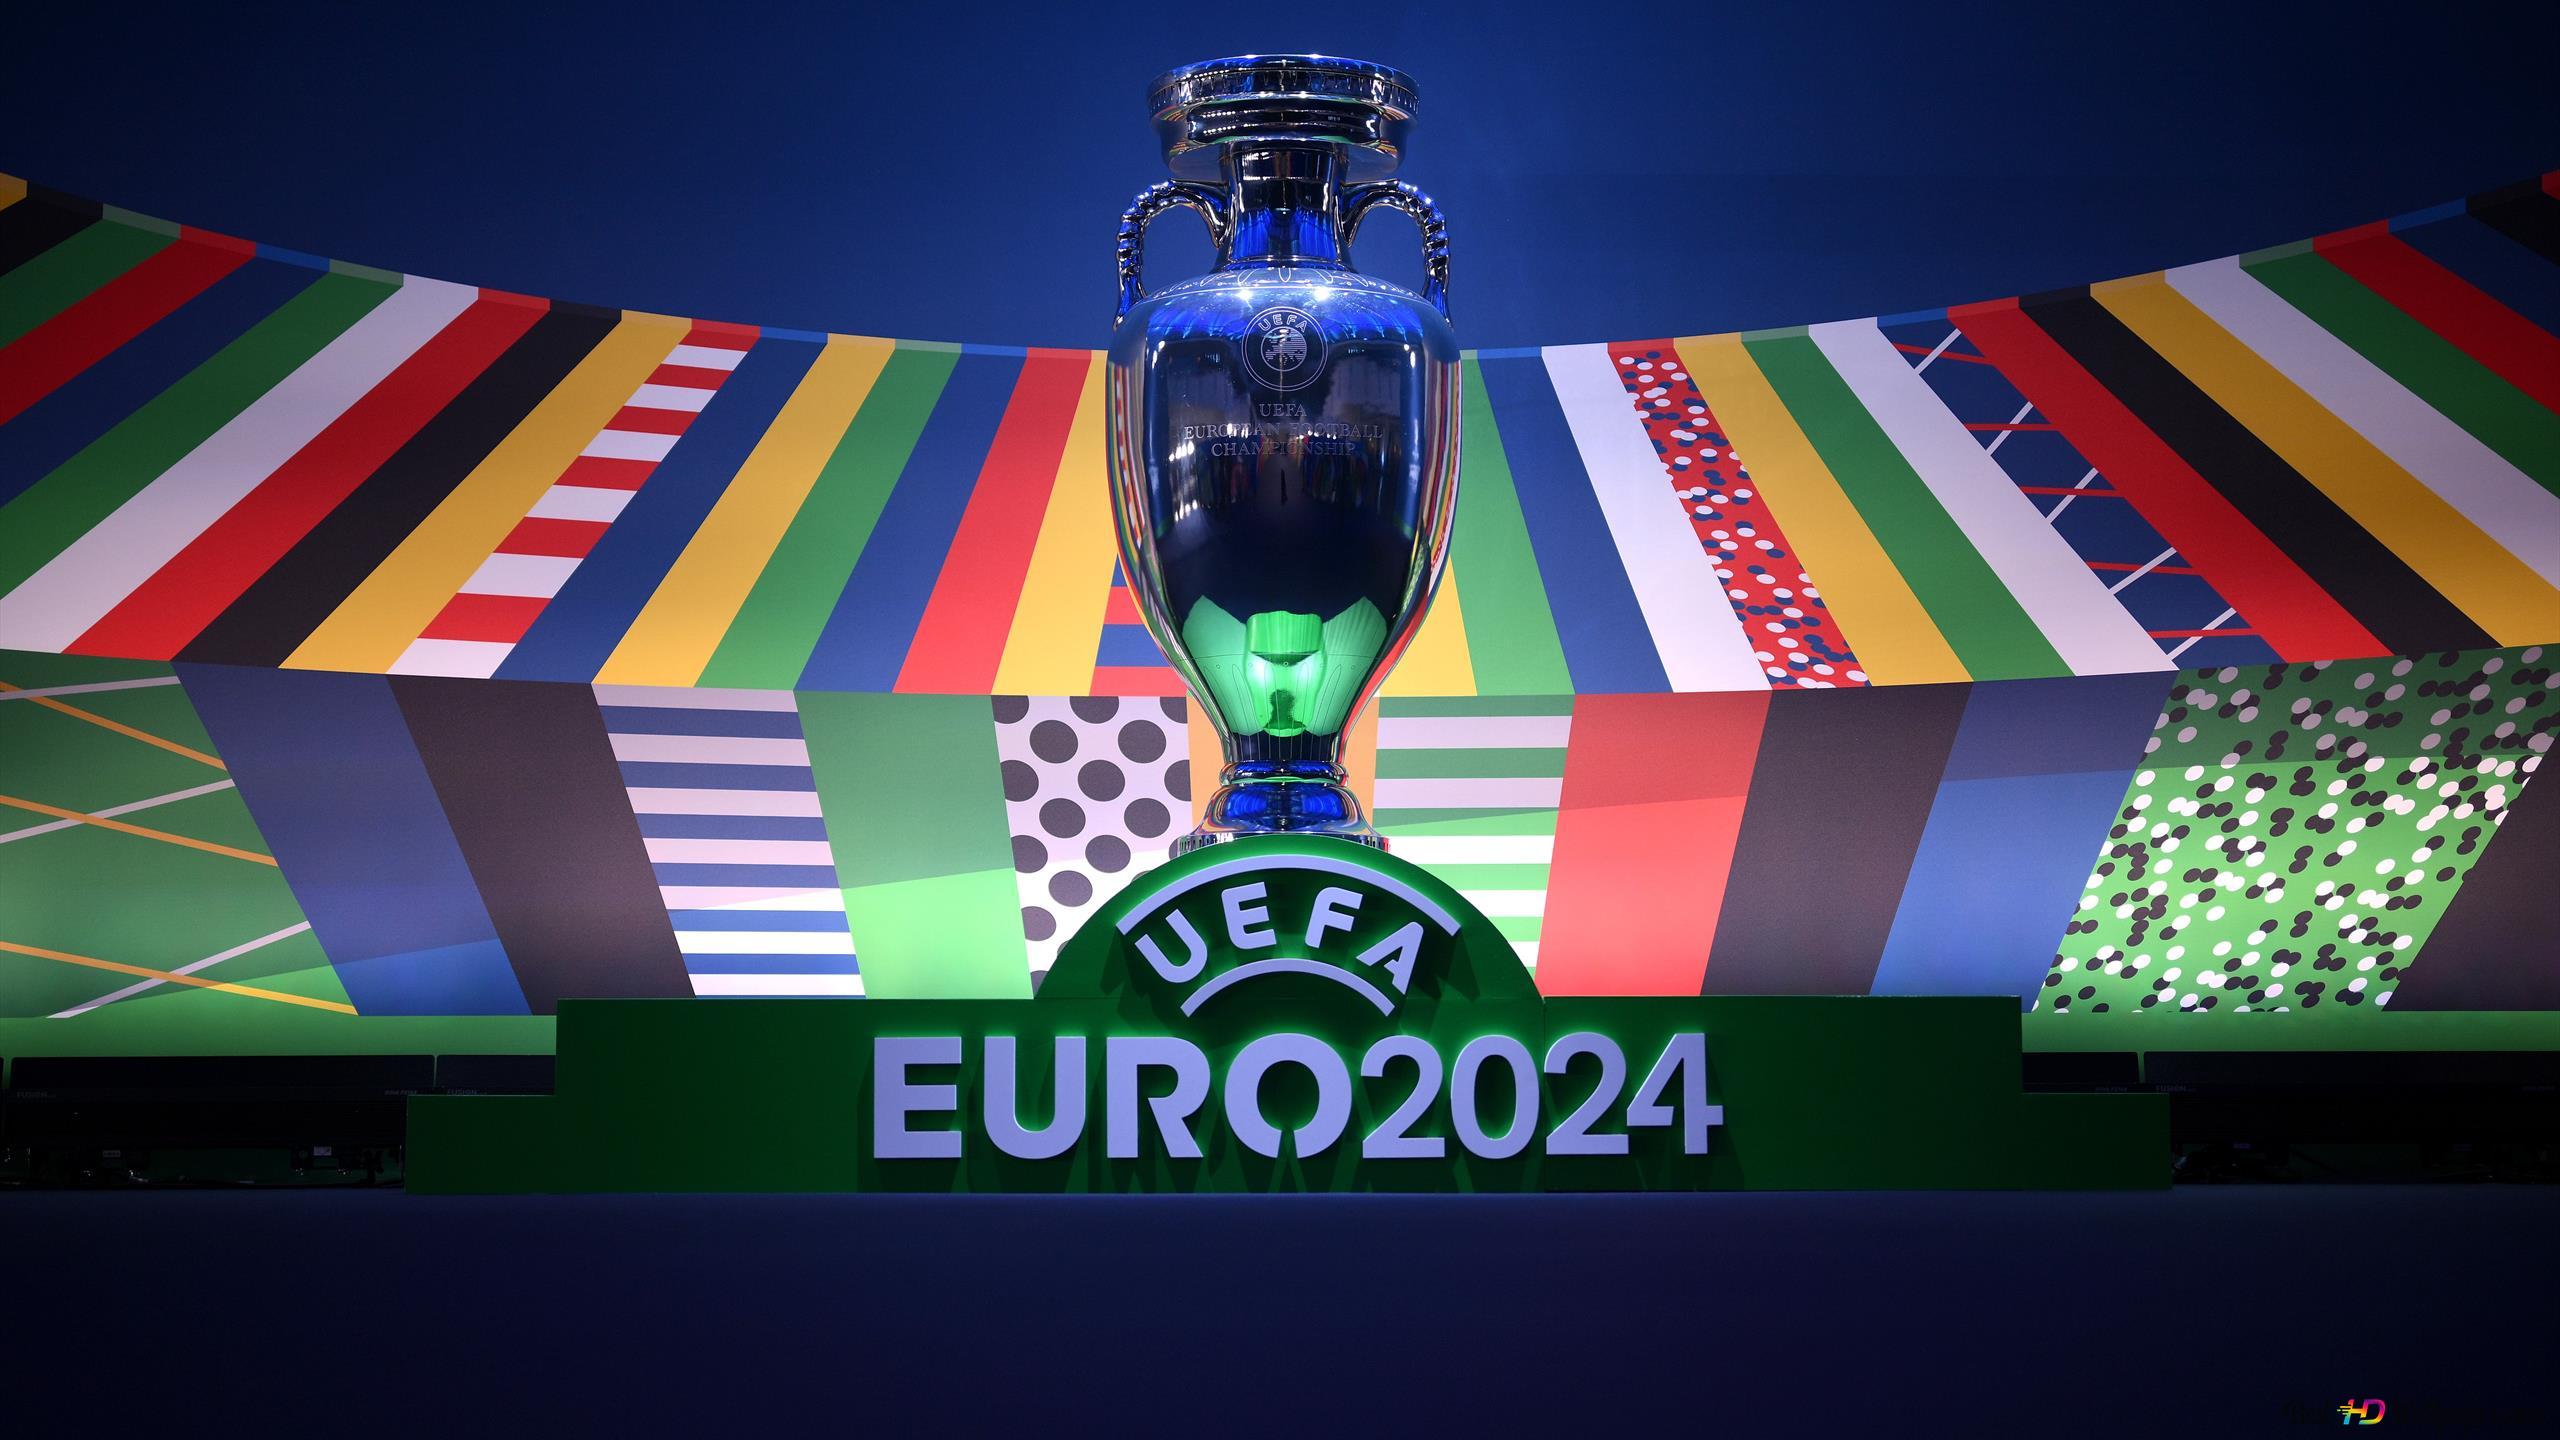 Préparez-vous pour le Championnat d’Europe de football 2024 avec nos programmes d’entraînement spécialisés